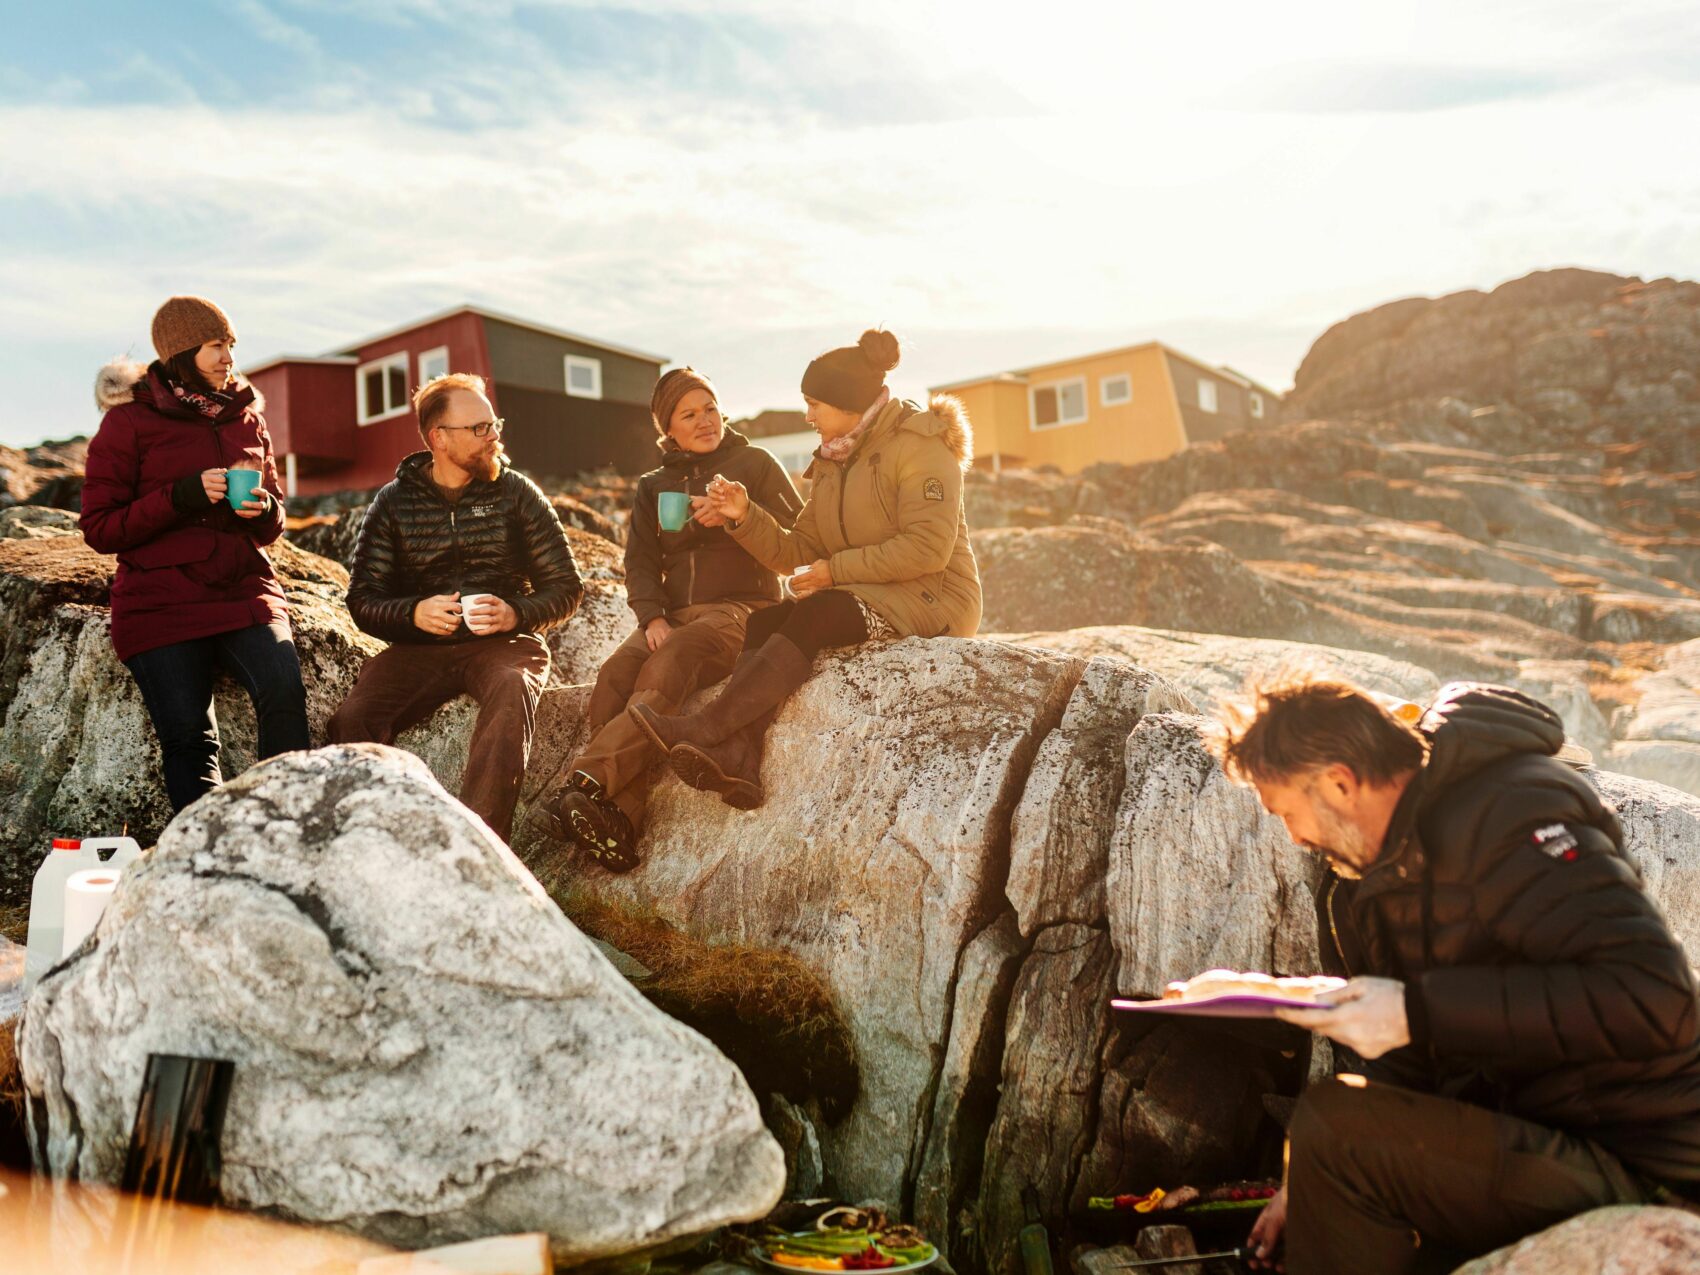 Nordgrönland: Picknik am Strand bei Inuk
Reisegruppe picknikt im Sonnenschein am felsigen Strand